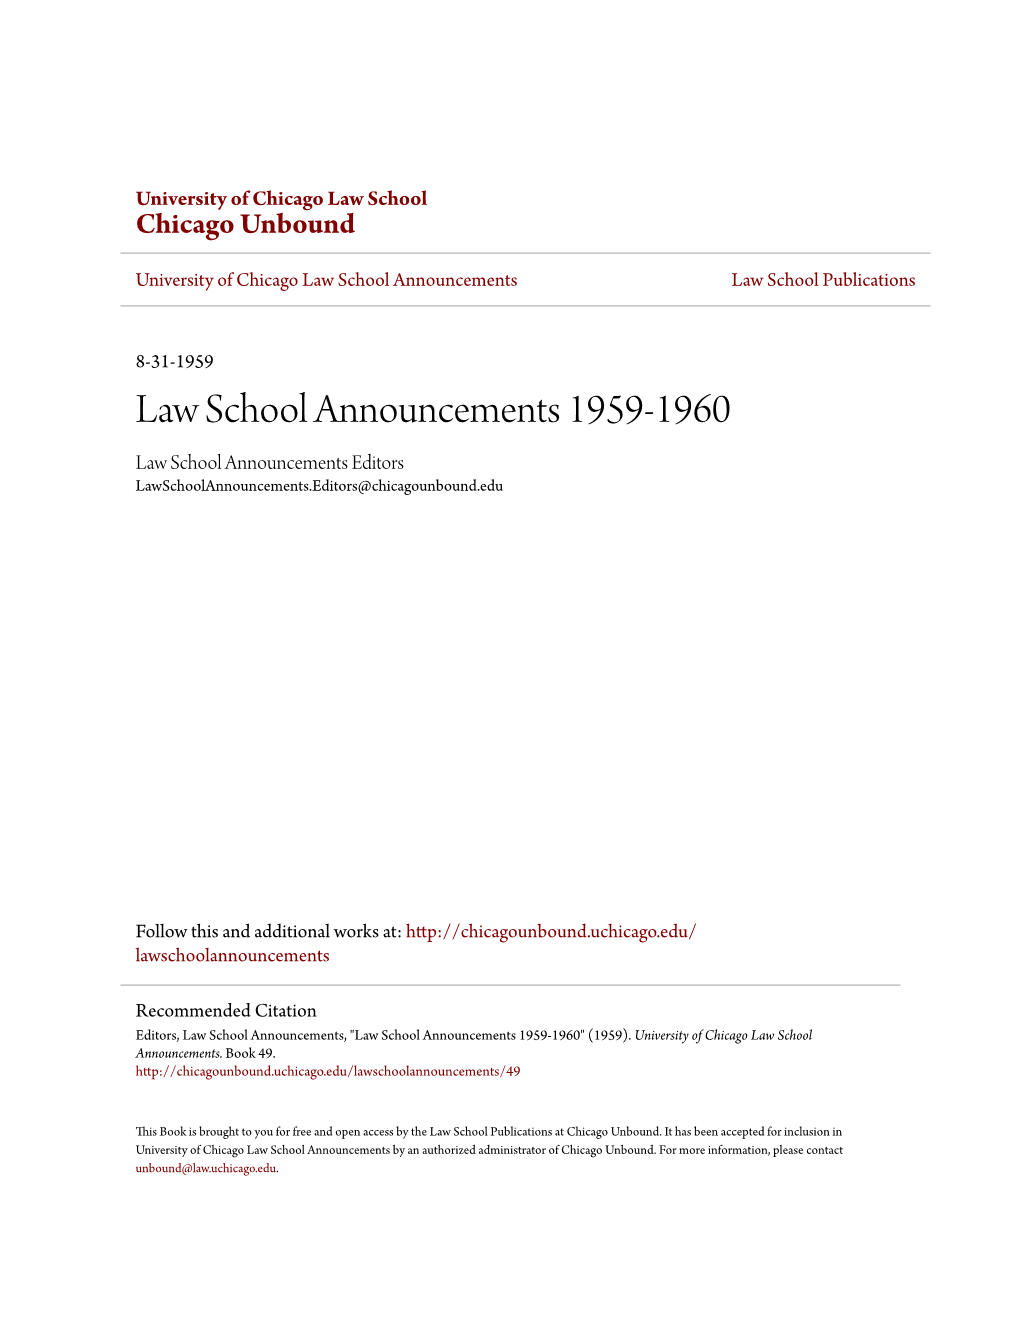 Law School Announcements 1959-1960 Law School Announcements Editors Lawschoolannouncements.Editors@Chicagounbound.Edu